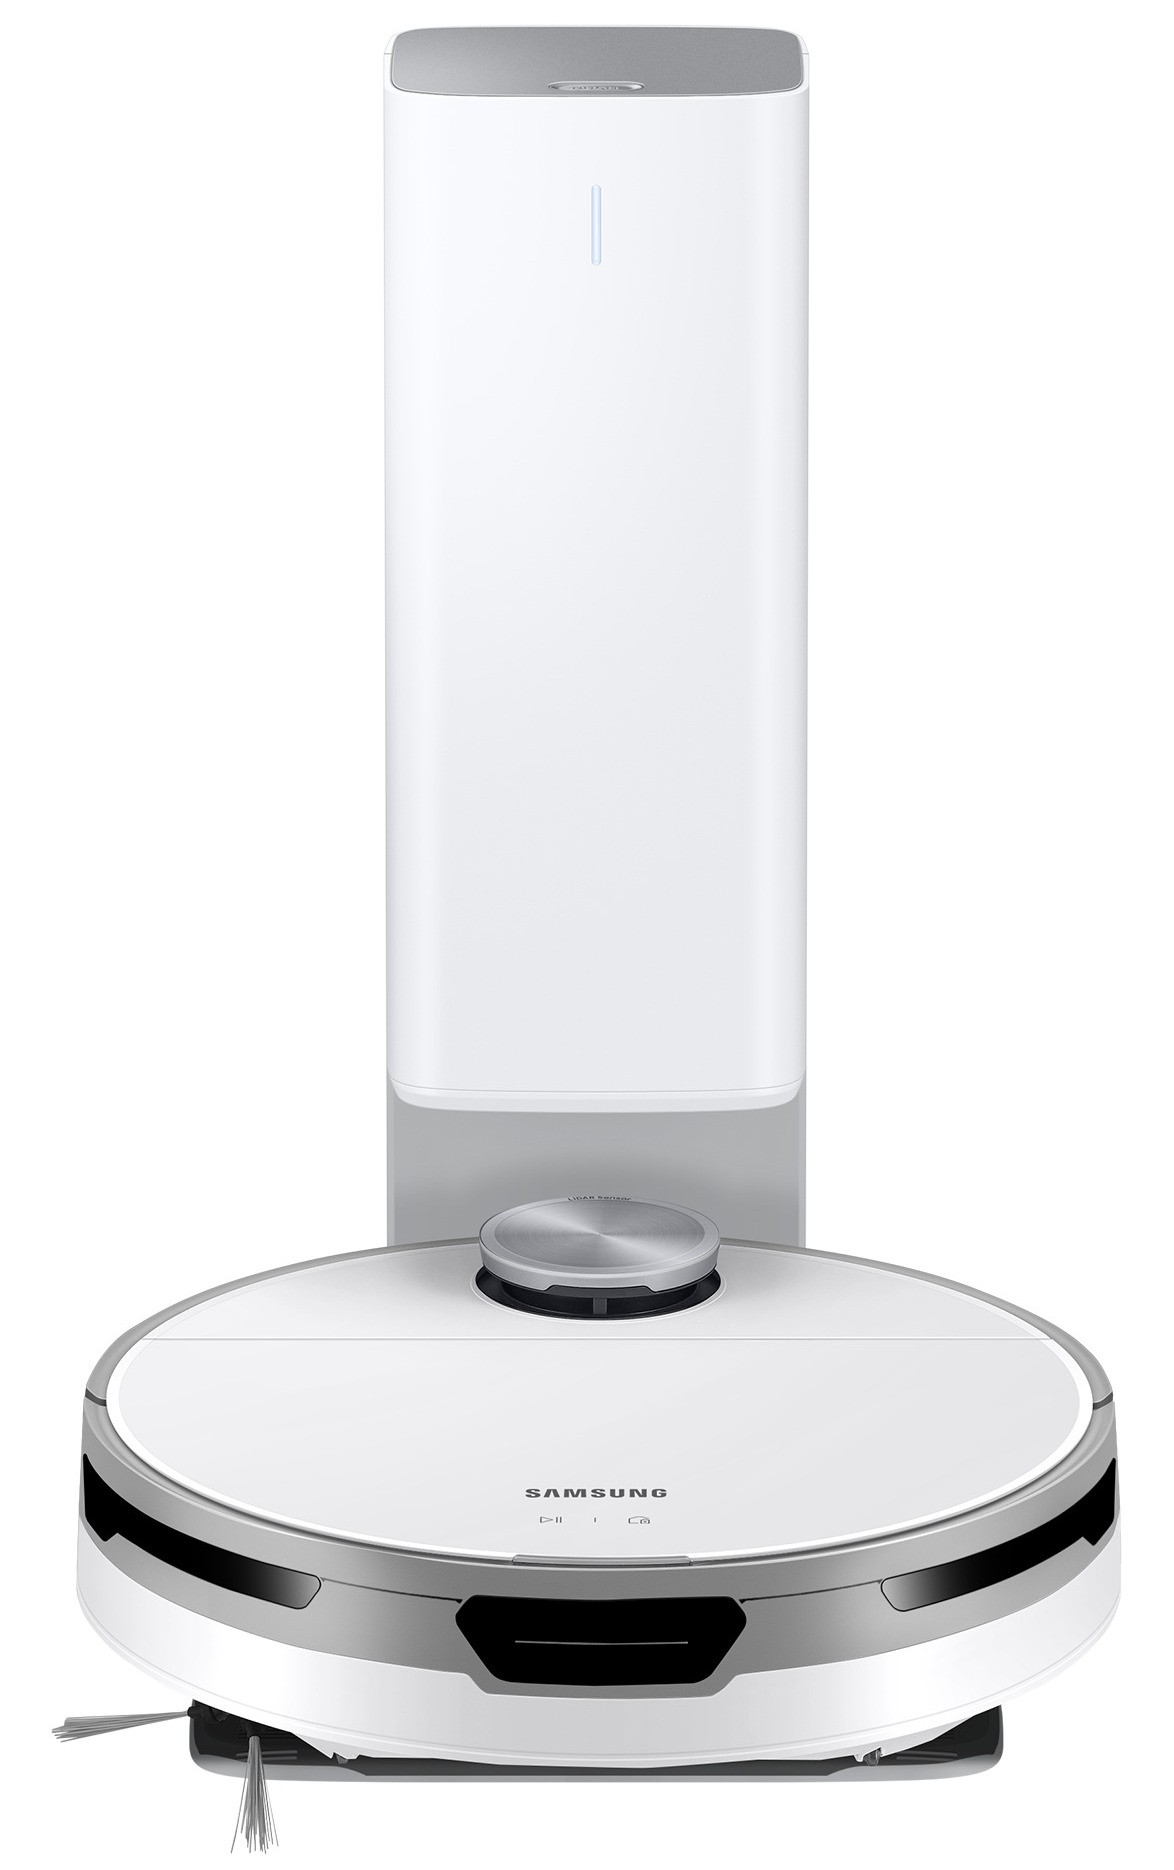 в ассортименте Робот-пылесос Samsung VR30T85513W/UK в магазине - фото 18